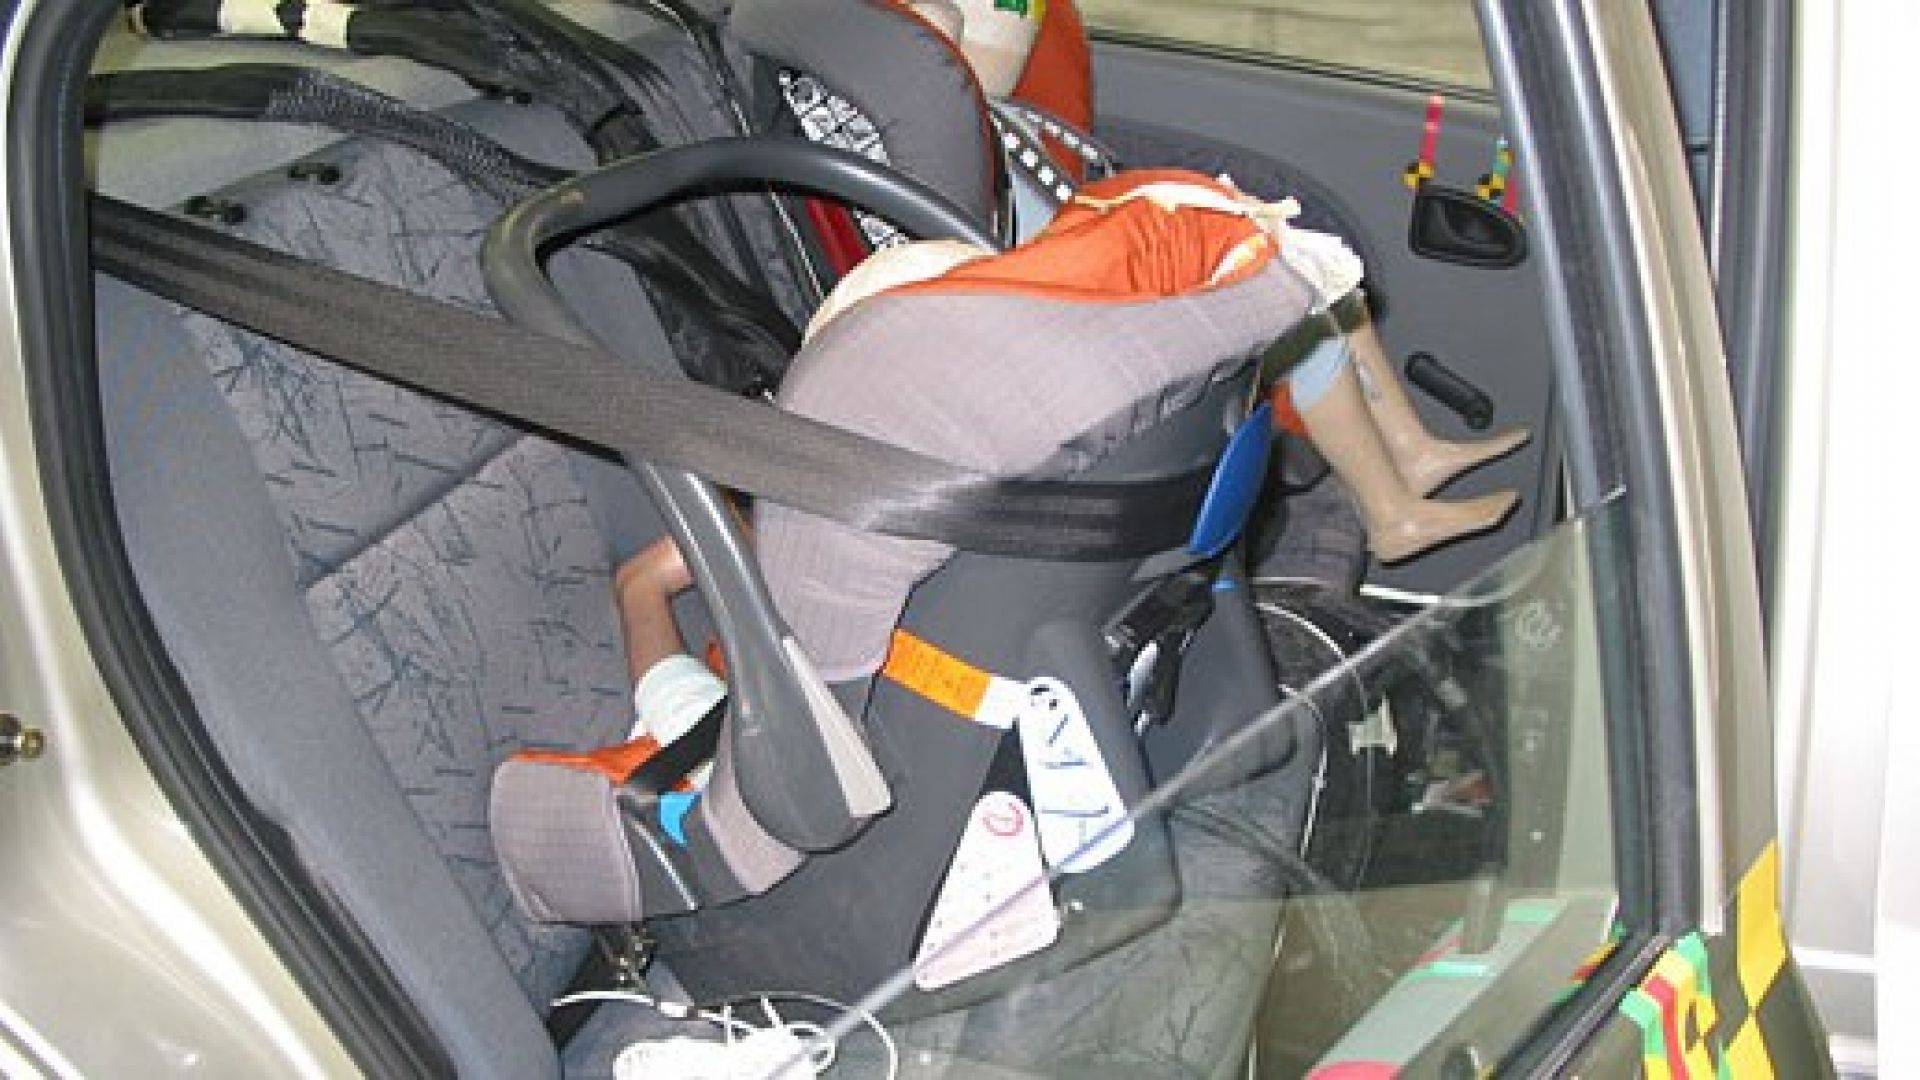 Установка автолюльки в машину: Как правильно установить автолюльку для новорожденных на заднее и переднее сиденье.